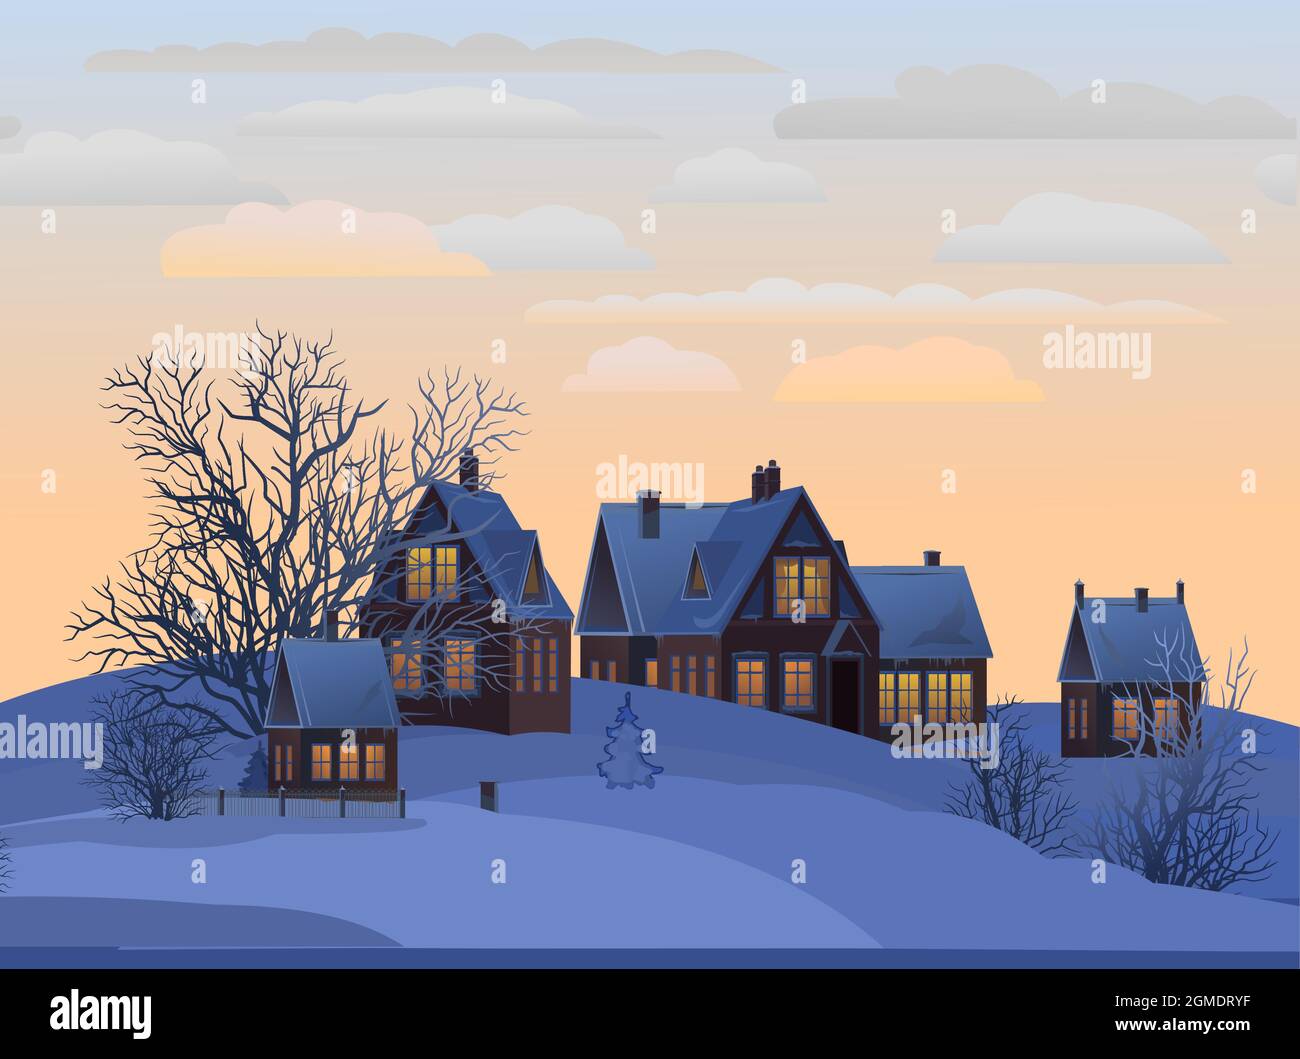 Villaggio. Case rurali in inverno. Natale. Serata tranquilla e gelida. Il tetto a timpano è coperto di neve. Collina. Paesaggio di campagna piacevole e accogliente. Piatto Illustrazione Vettoriale